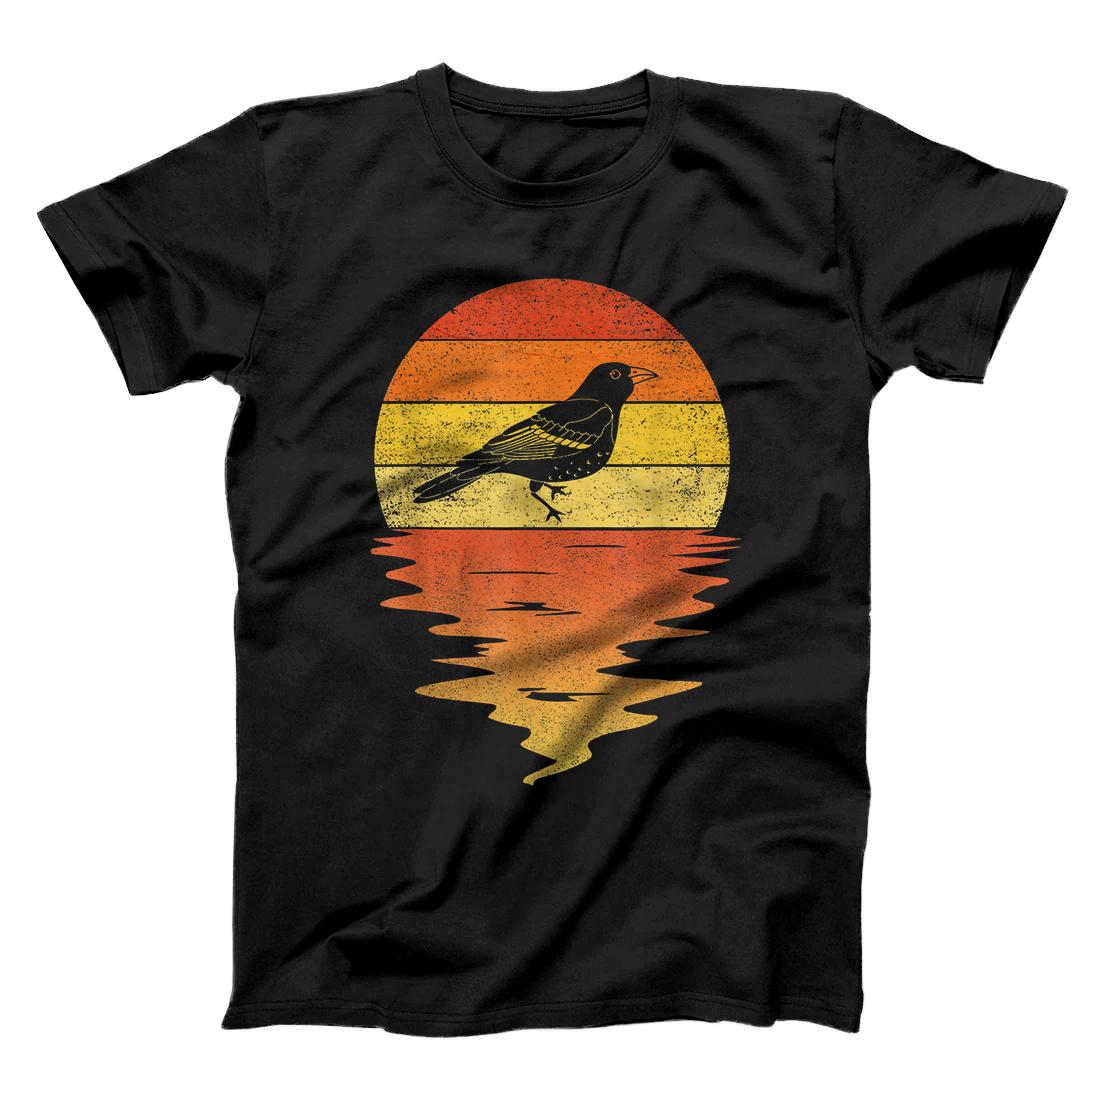 Personalized Baltimore oriole shirt retro sunset vintage Baltimore oriole T-Shirt